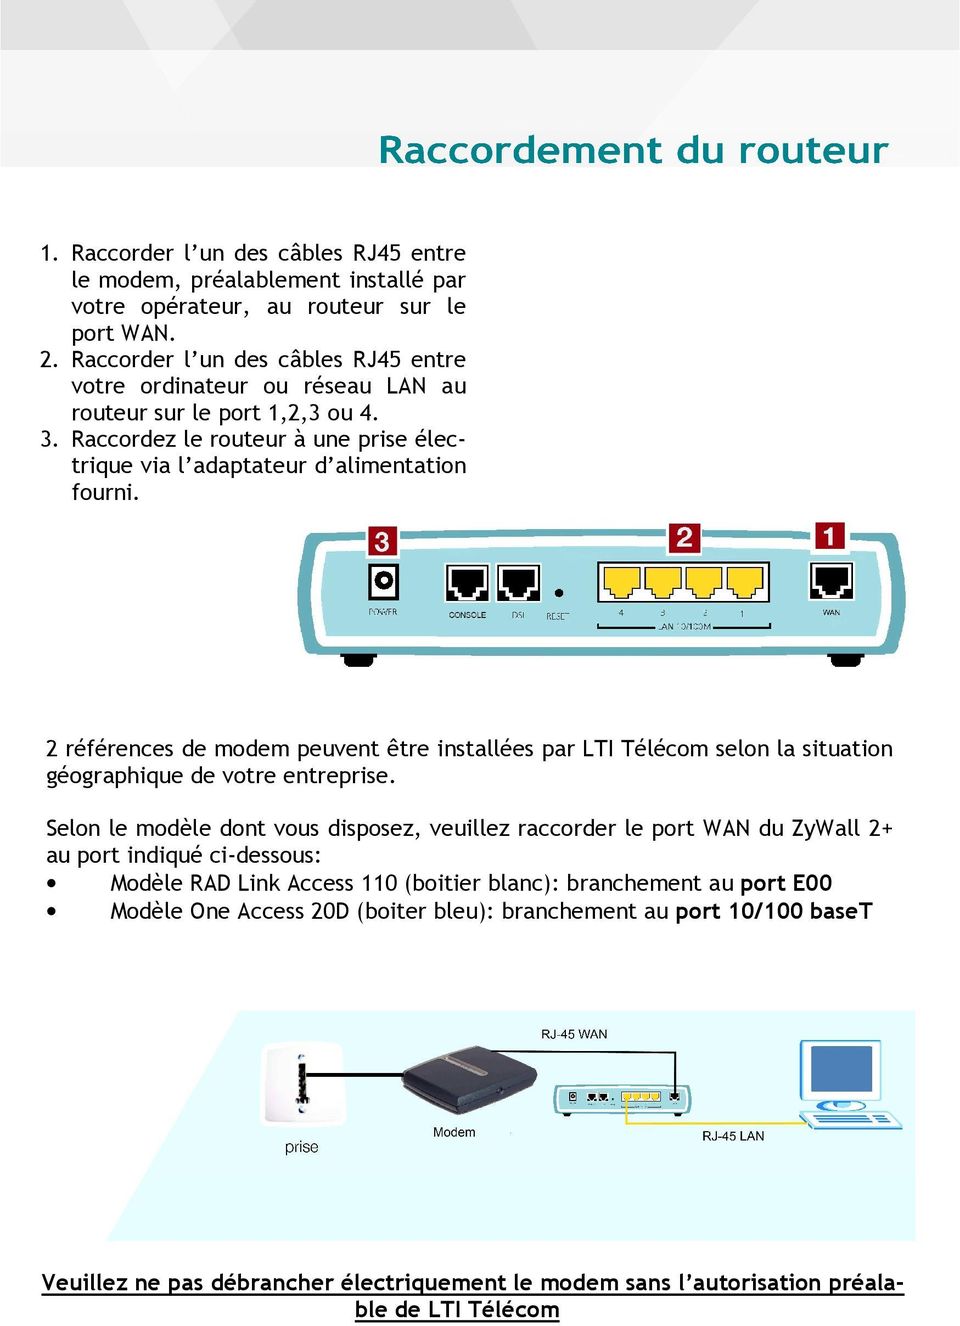 2 références de modem peuvent être installées par LTI Télécom selon la situation géographique de votre entreprise.